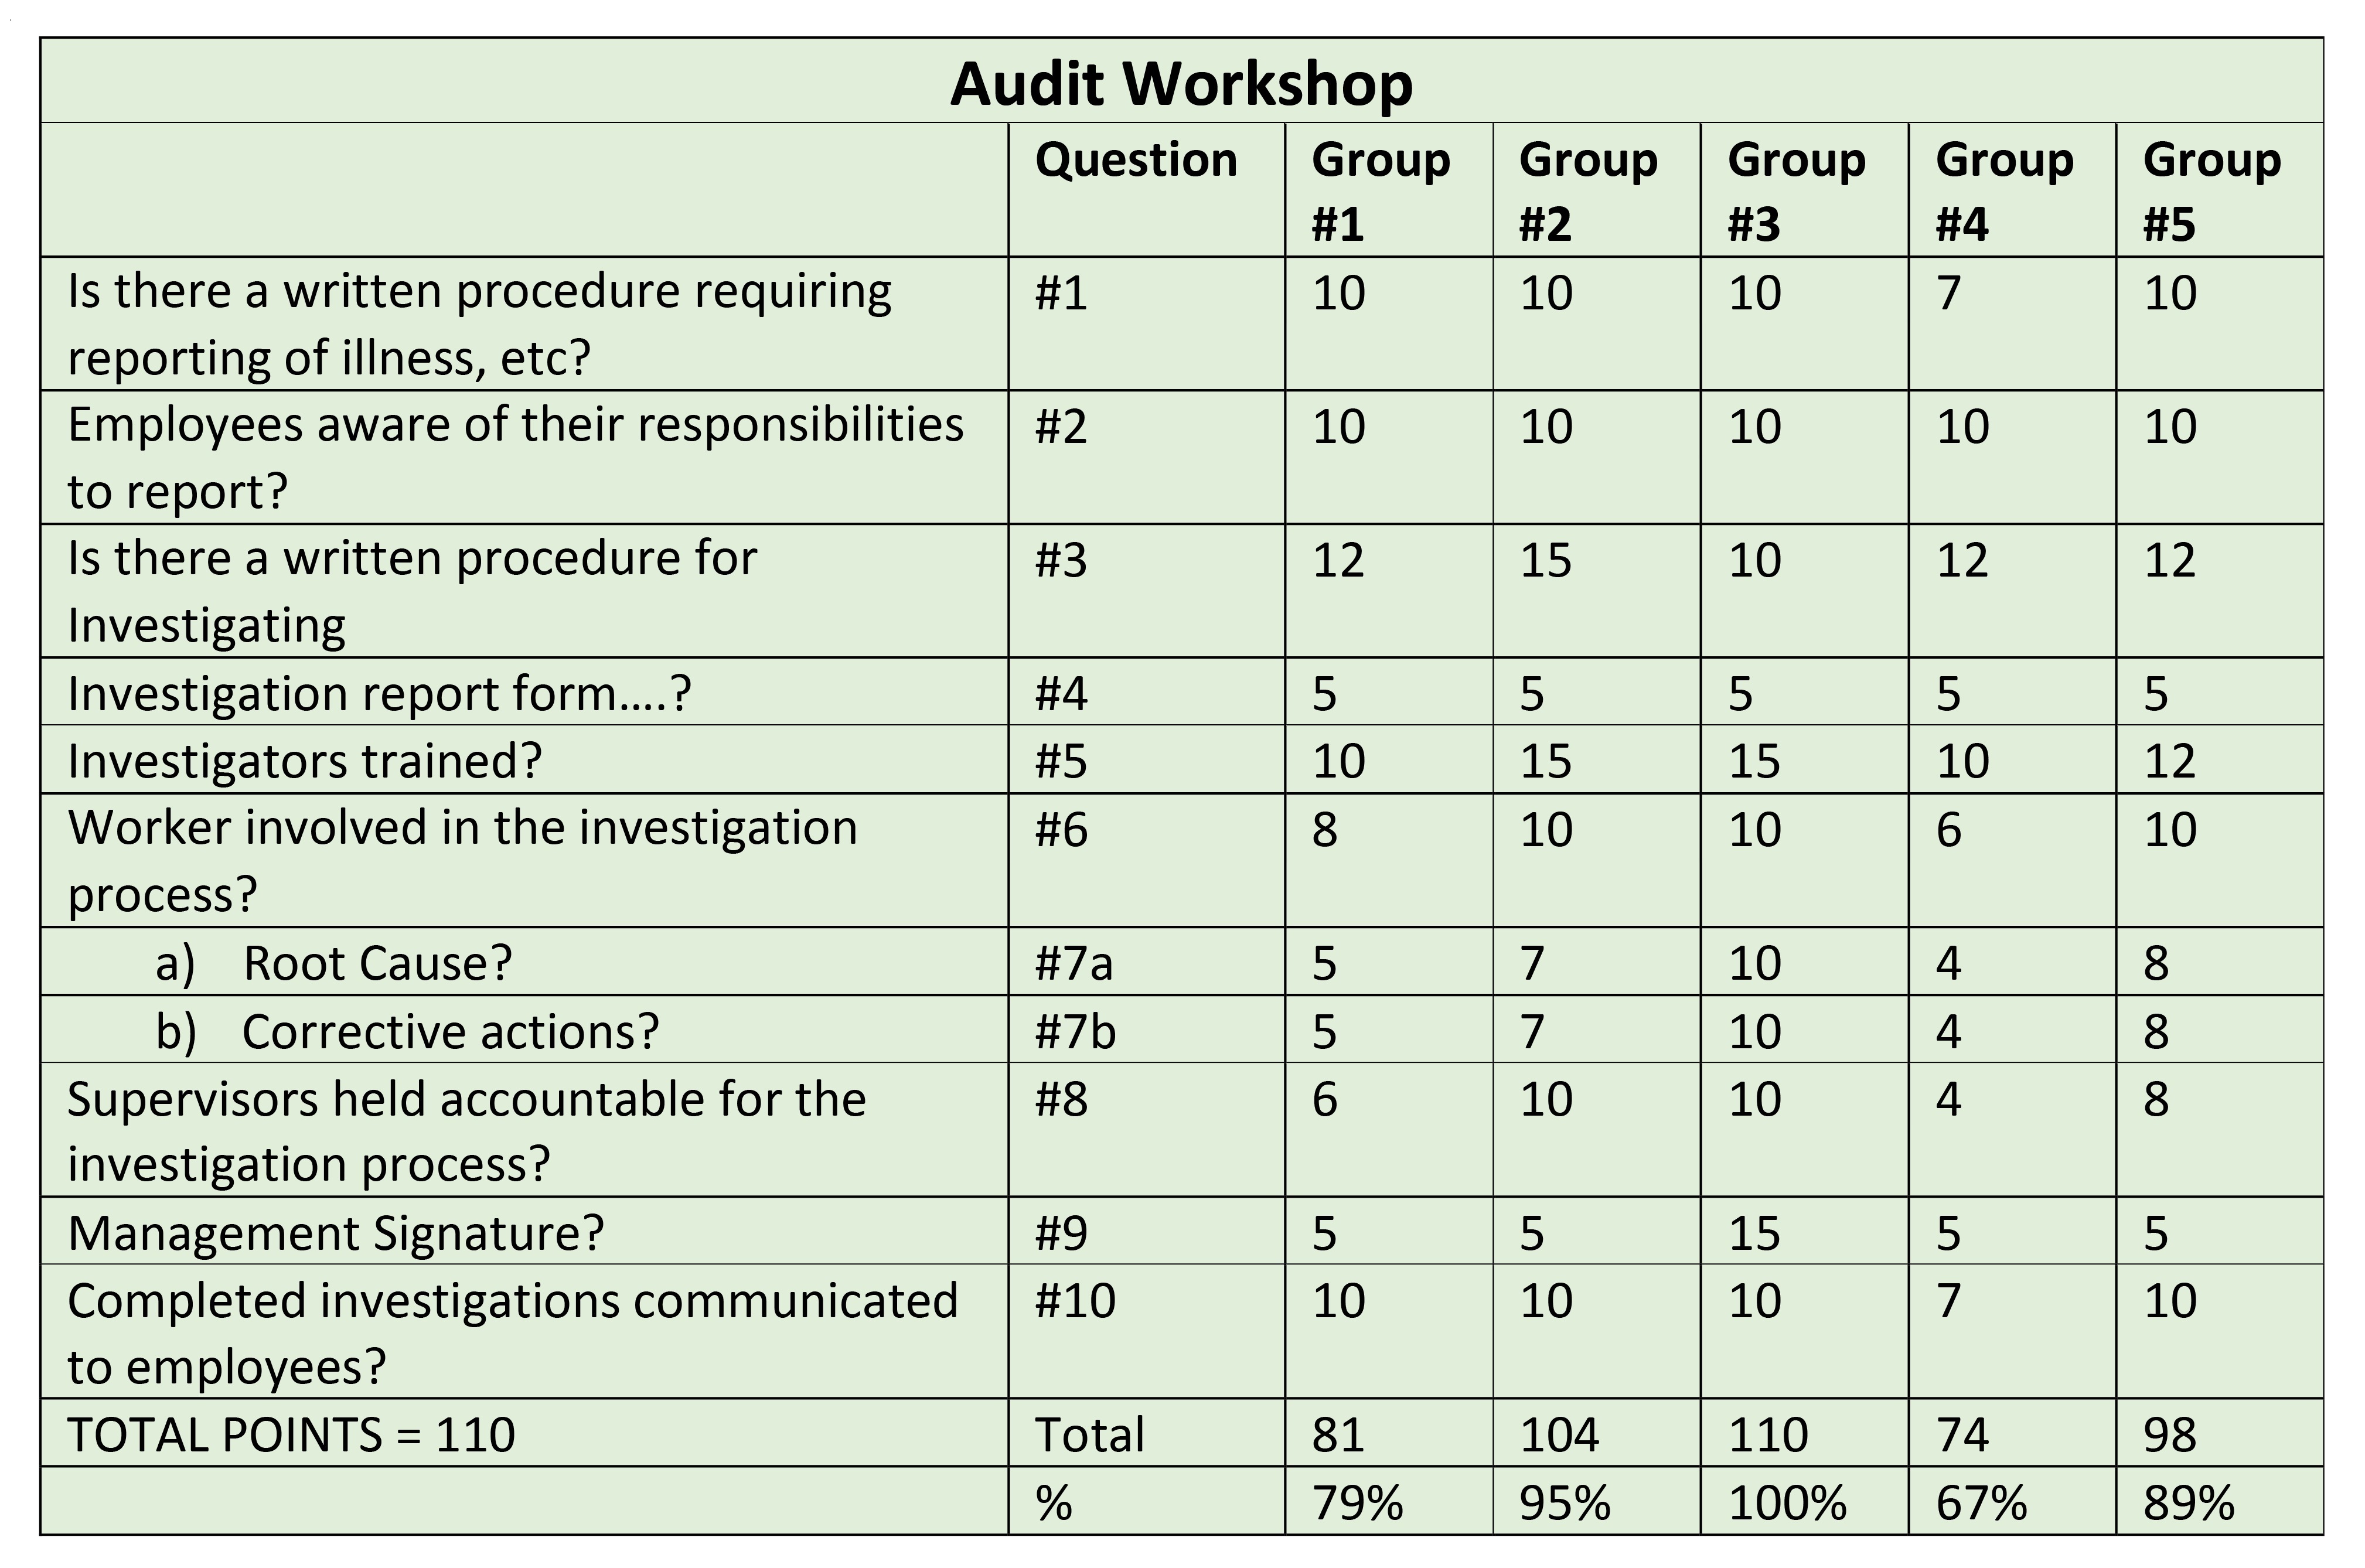 Audit scoring workshop